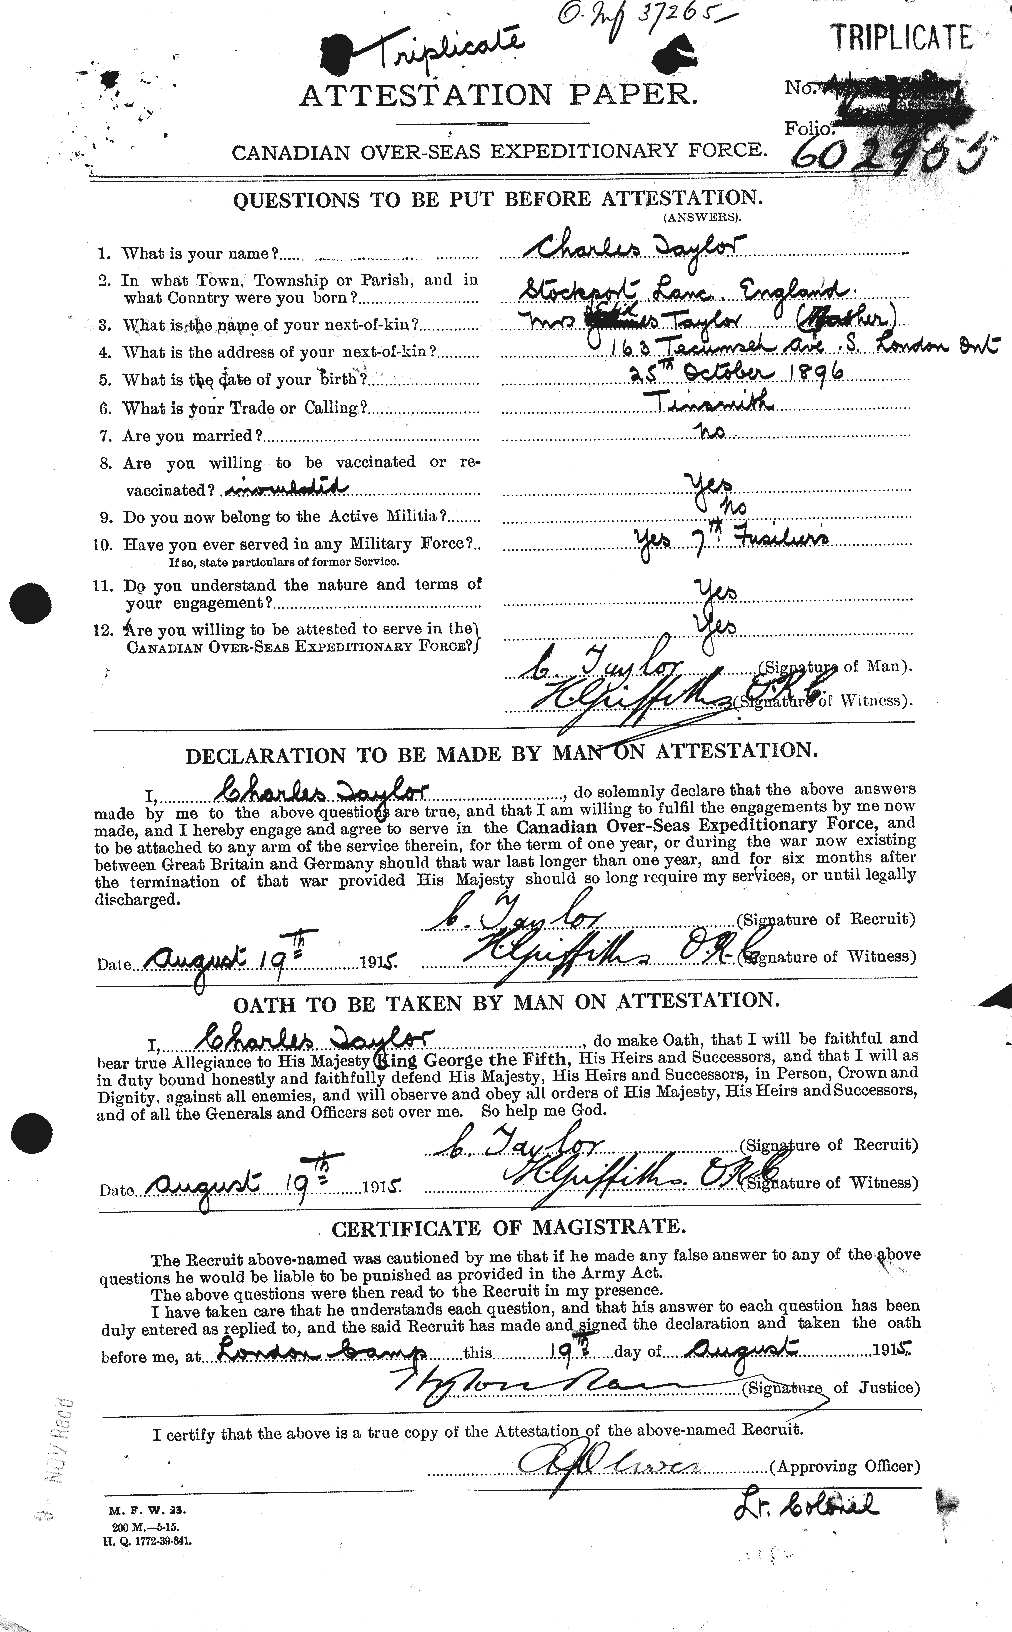 Dossiers du Personnel de la Première Guerre mondiale - CEC 626811a